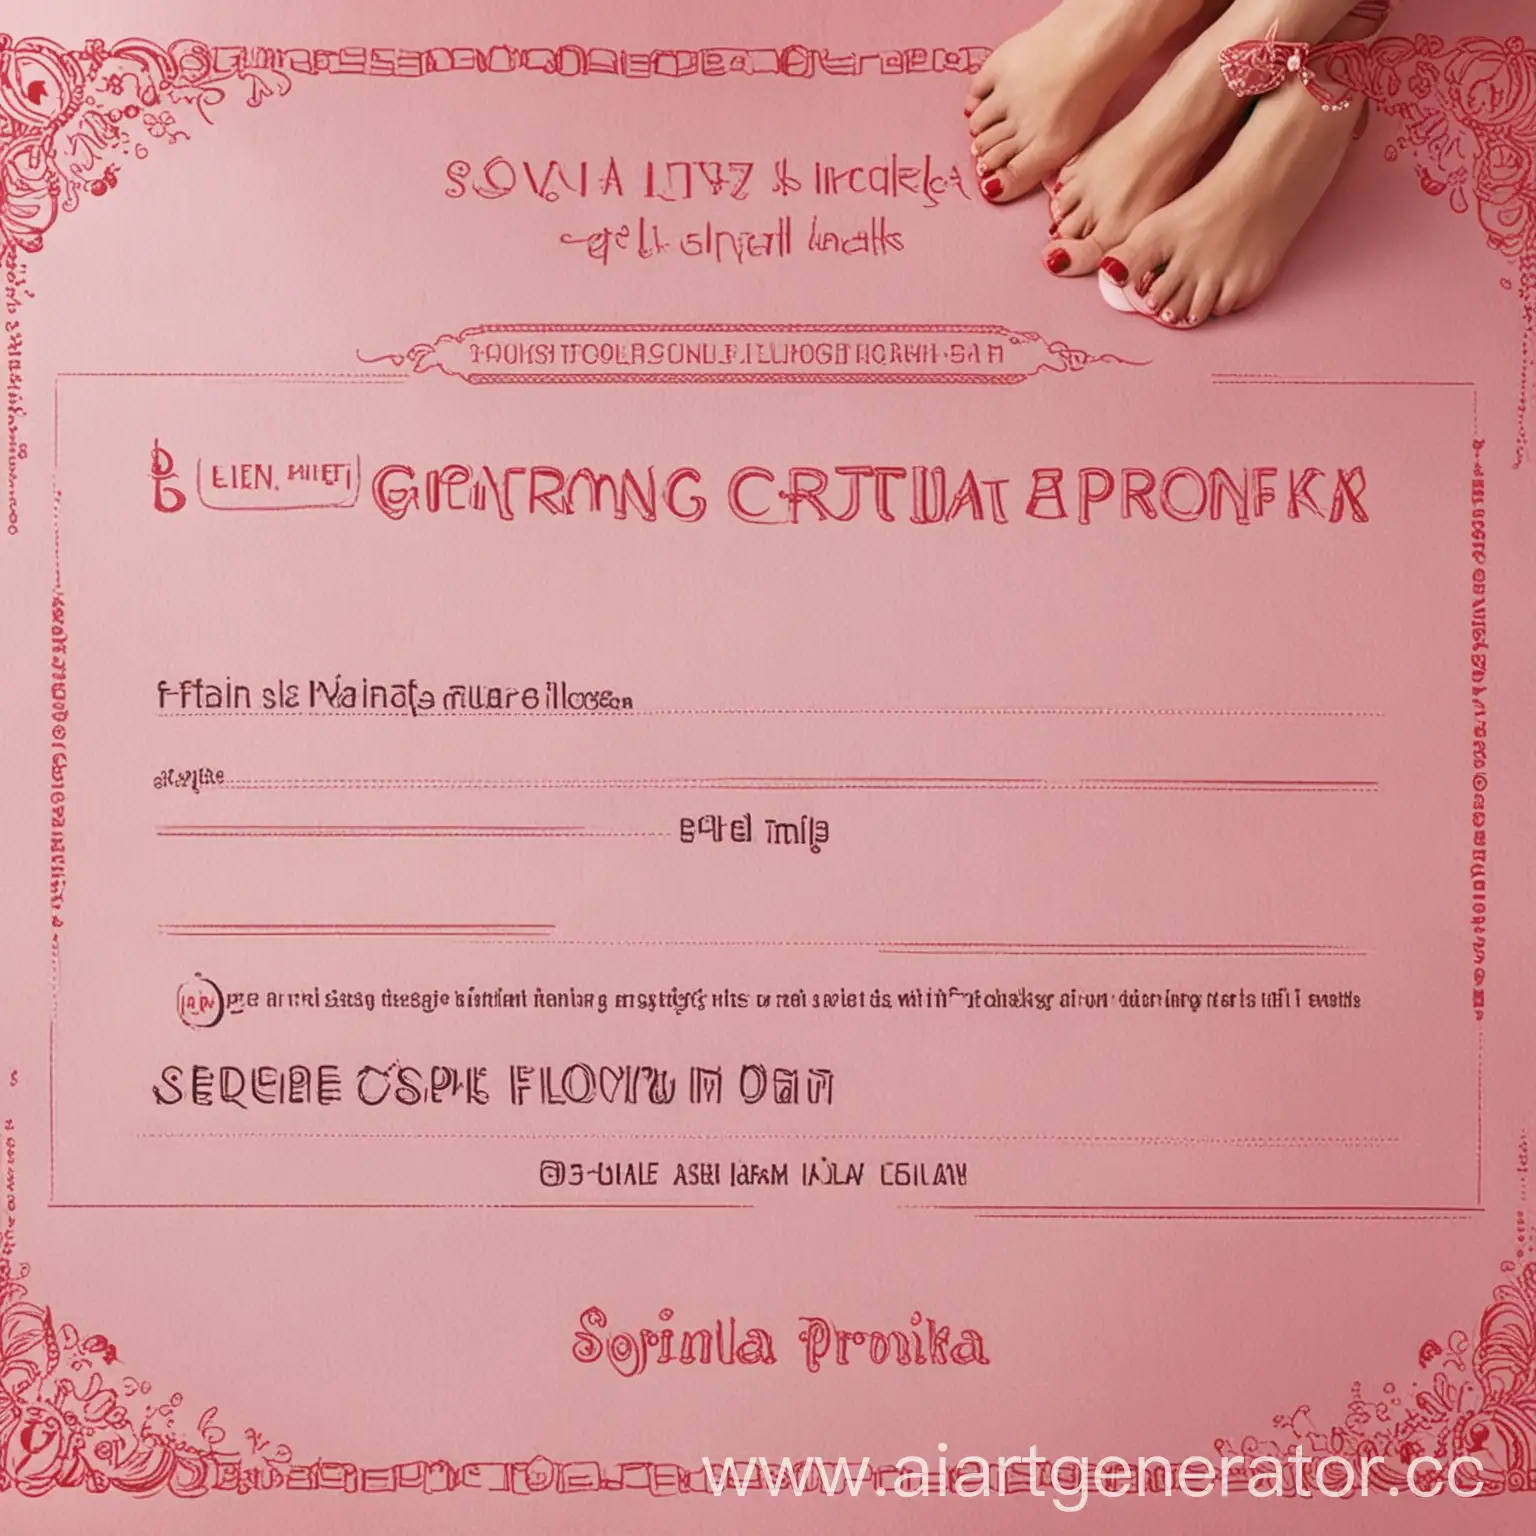 Сделай поддельный подарочный сертификат для Прониной Софии в салон lizpolizpatka на годовое бесплатно лизание пятак